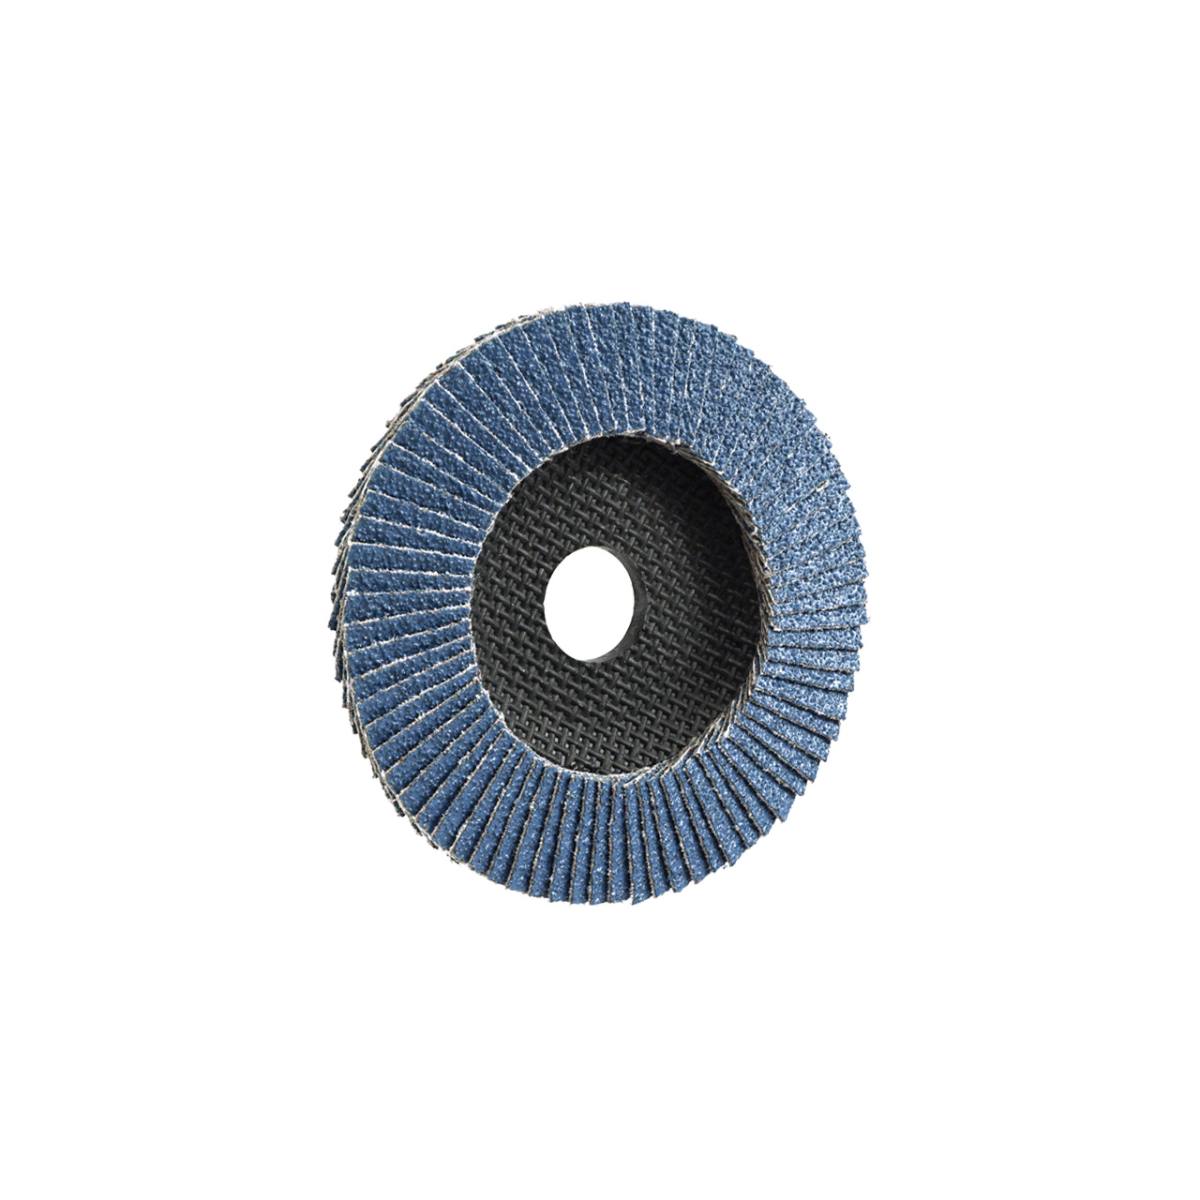 TRIMFIX ZIRCOPUR, 115 mm x 22.2 mm, grit 80, flap disc